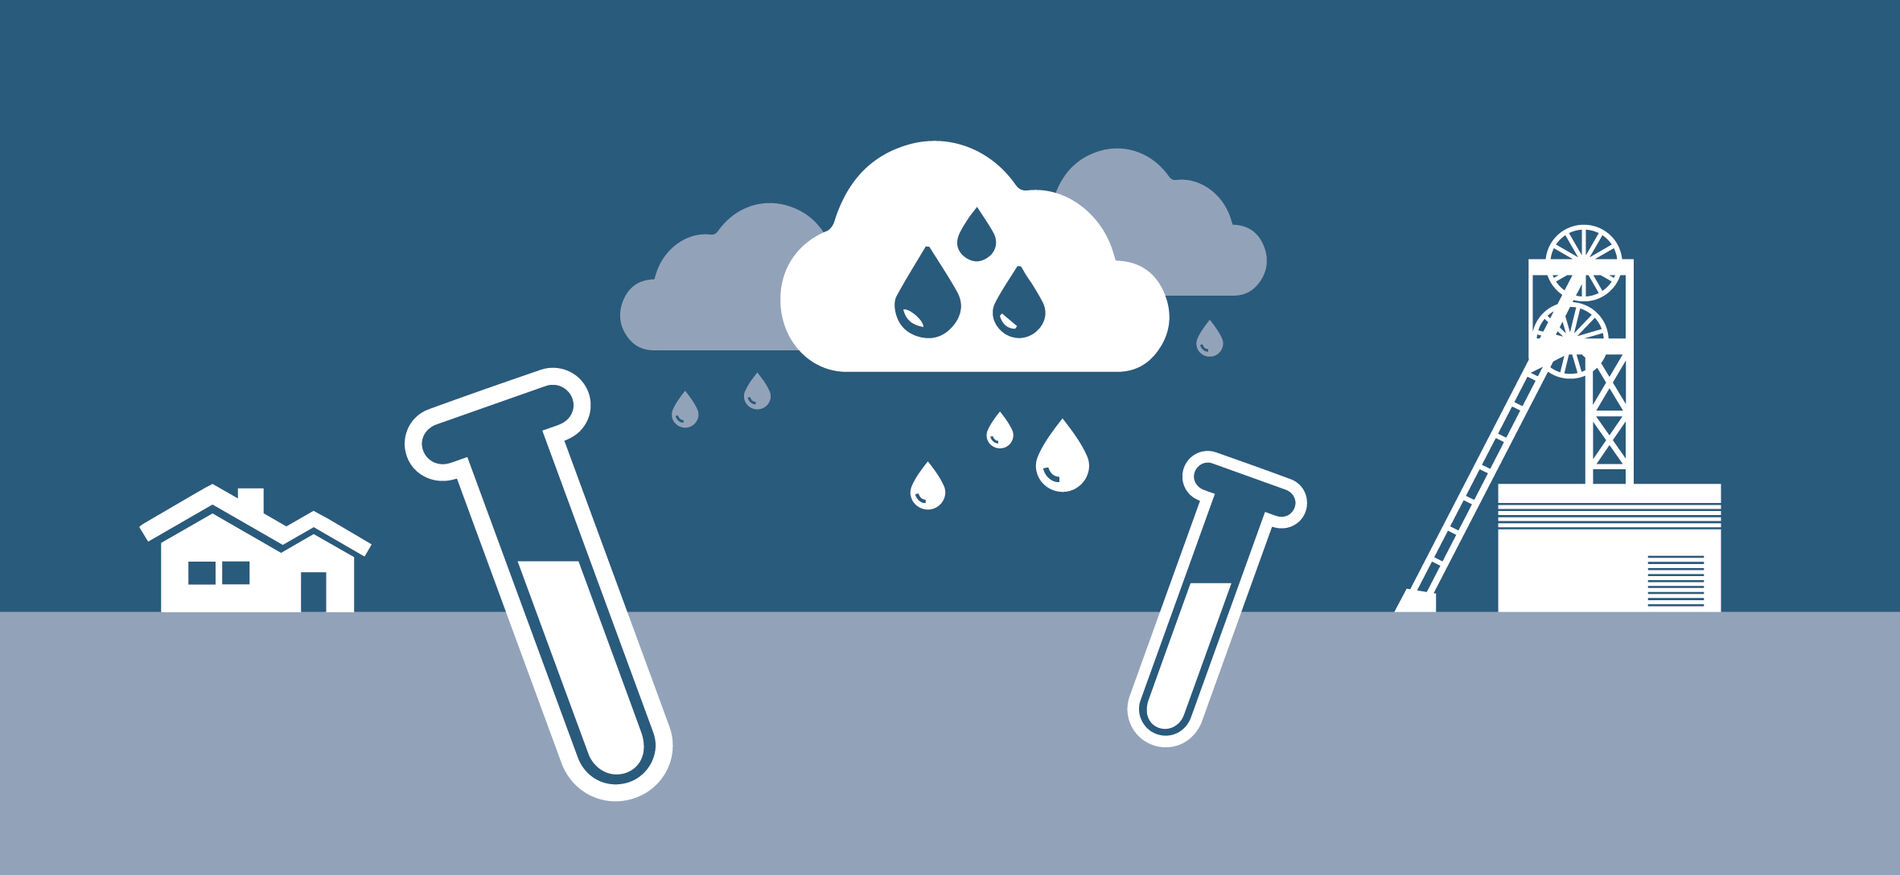 Die stilisierte Grafik zeigt Wolken, Regen und Reagenzgläser neben dem Piktogramm des Asse-Fördergerüsts.